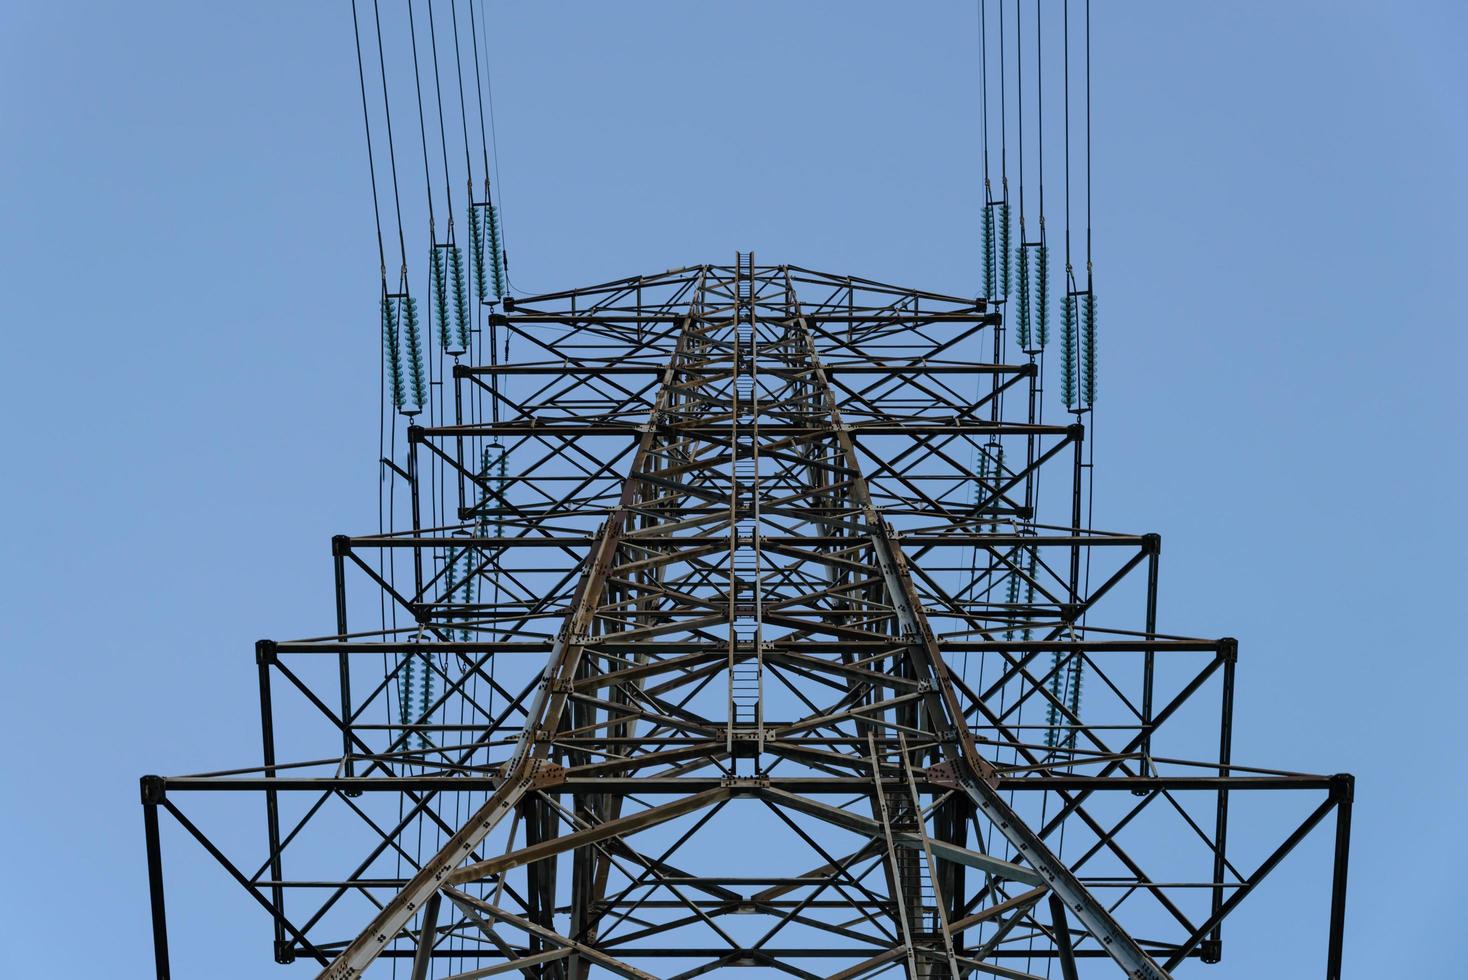 hoogspanningstoren, hoogspanningslijnen voor elektriciteitstransmissie; foto